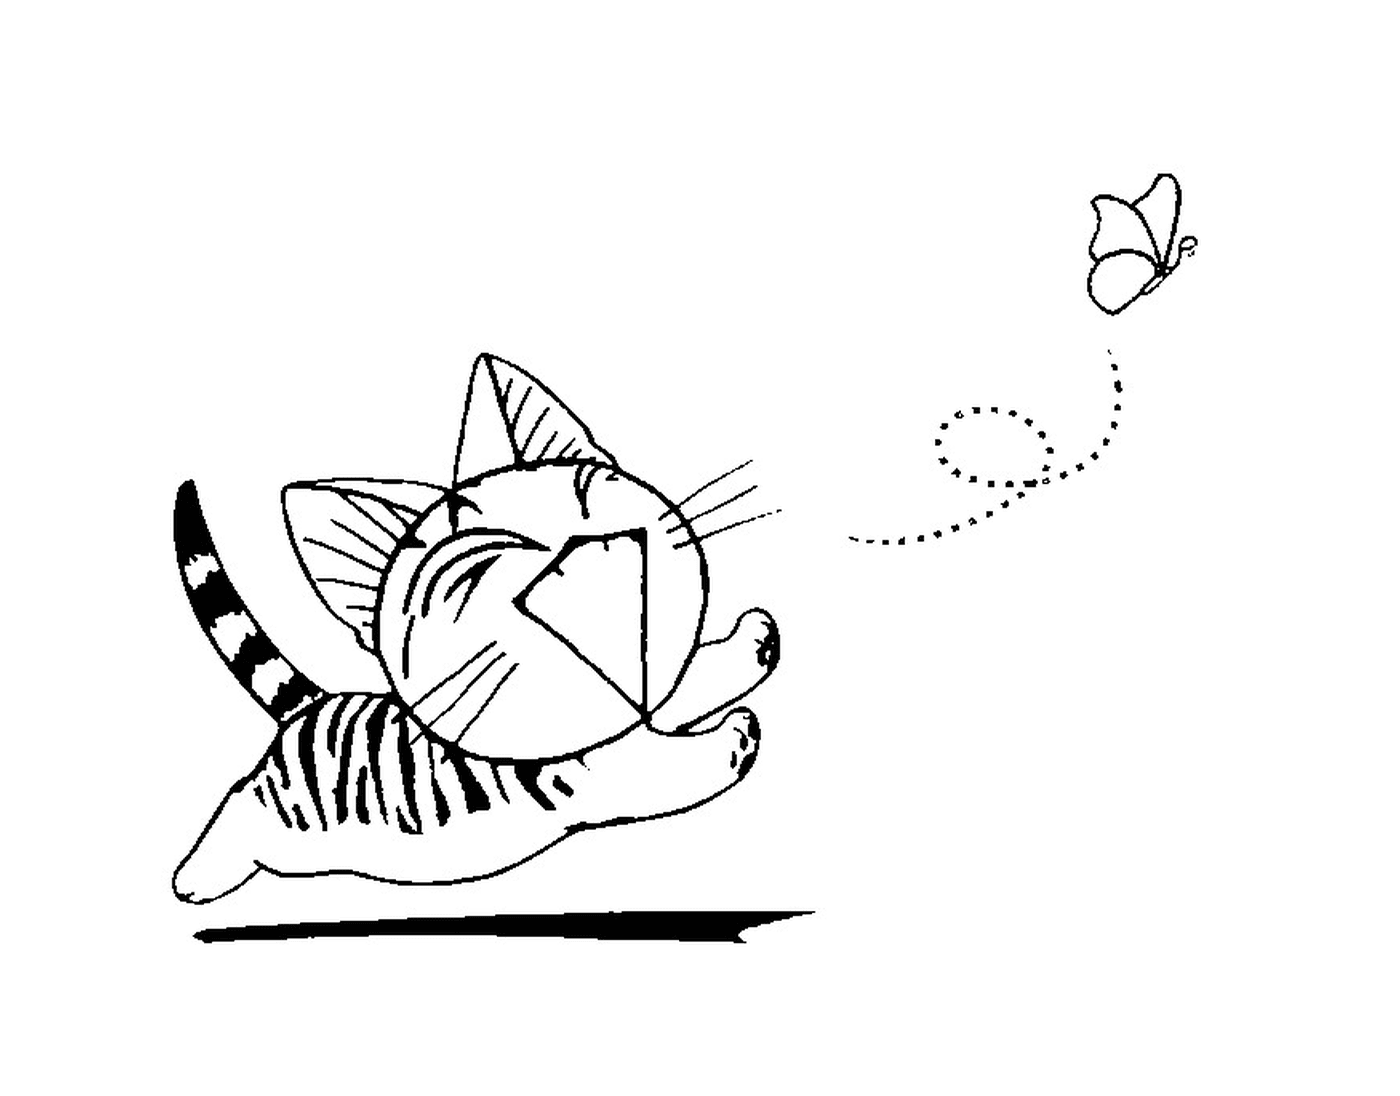  Um gato chinês correndo atrás de uma borboleta 